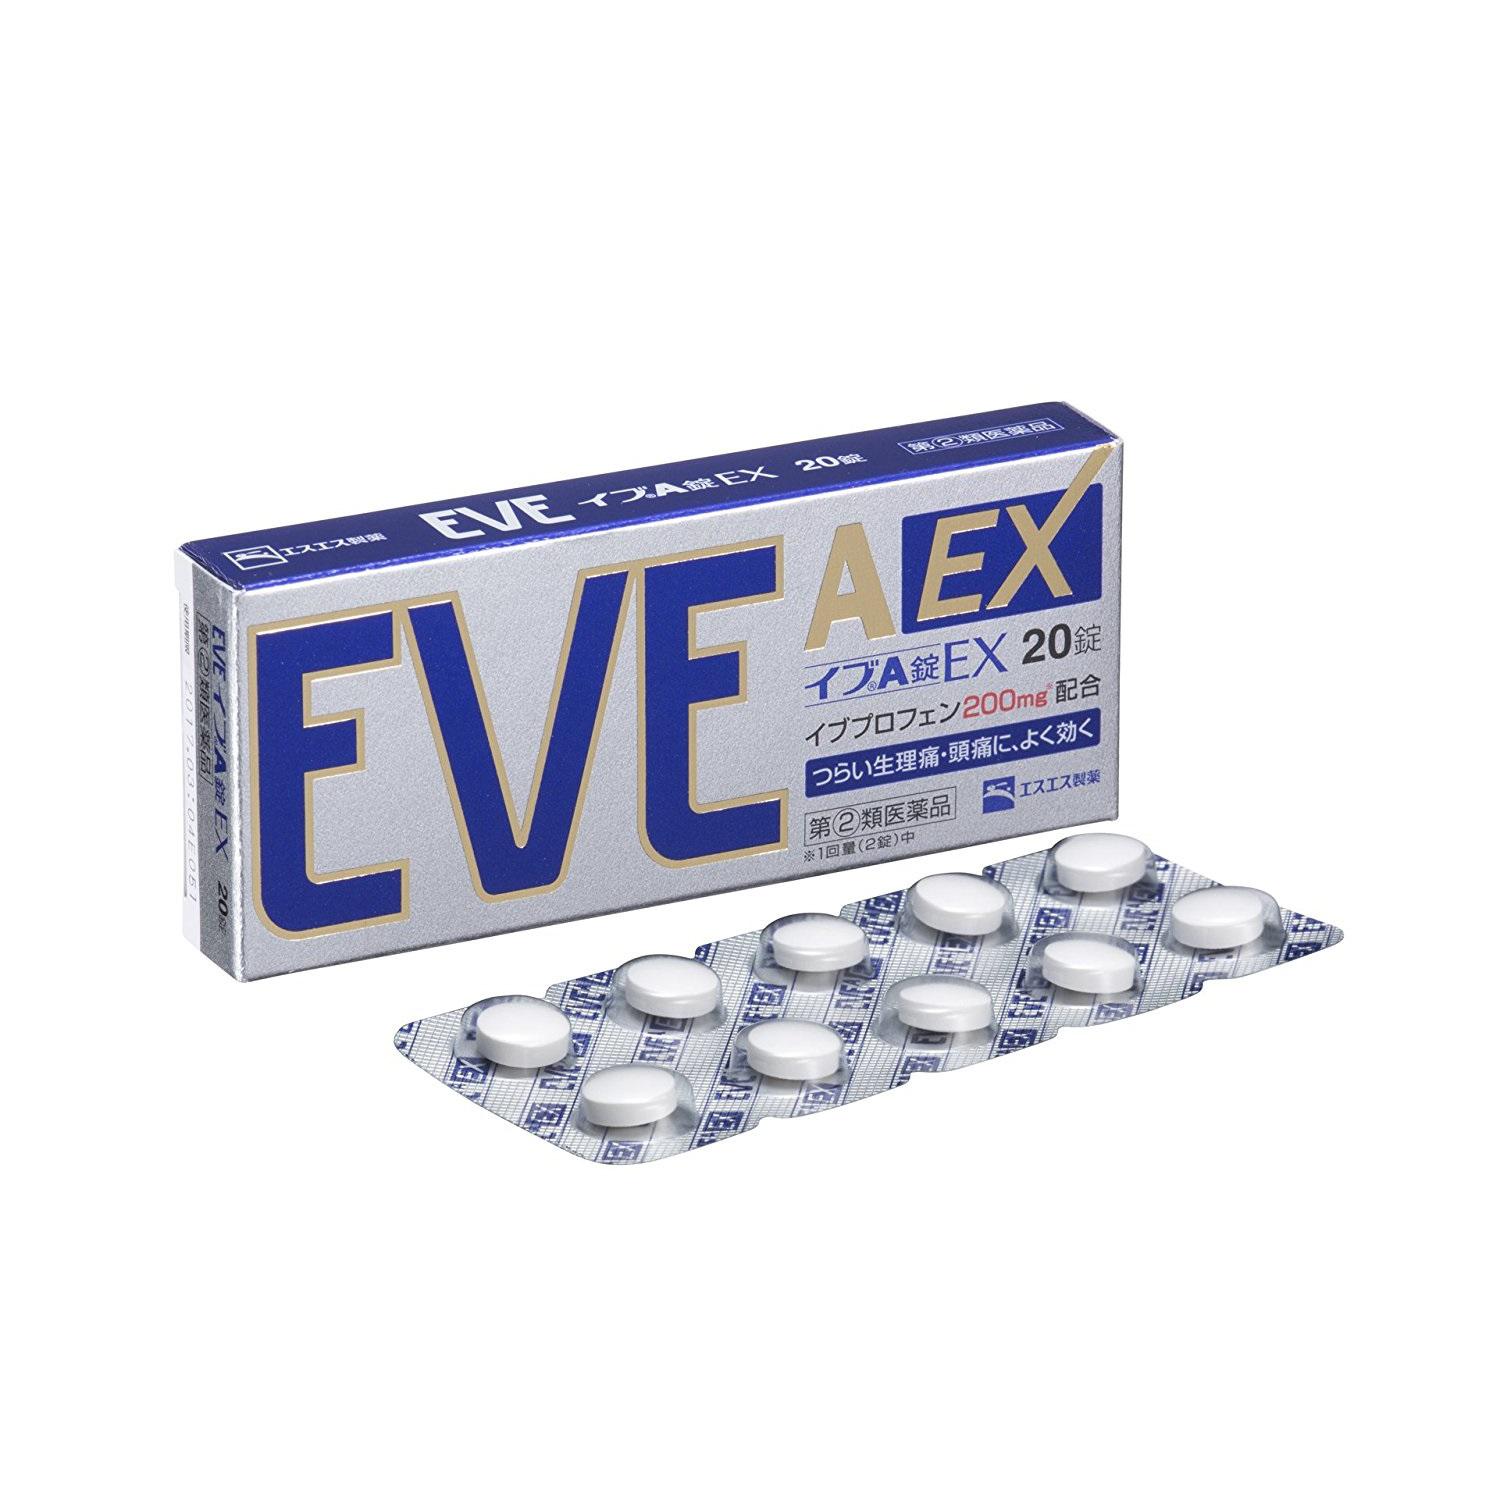 SS制药 白兔牌EVE A EX加强版止痛药 20片